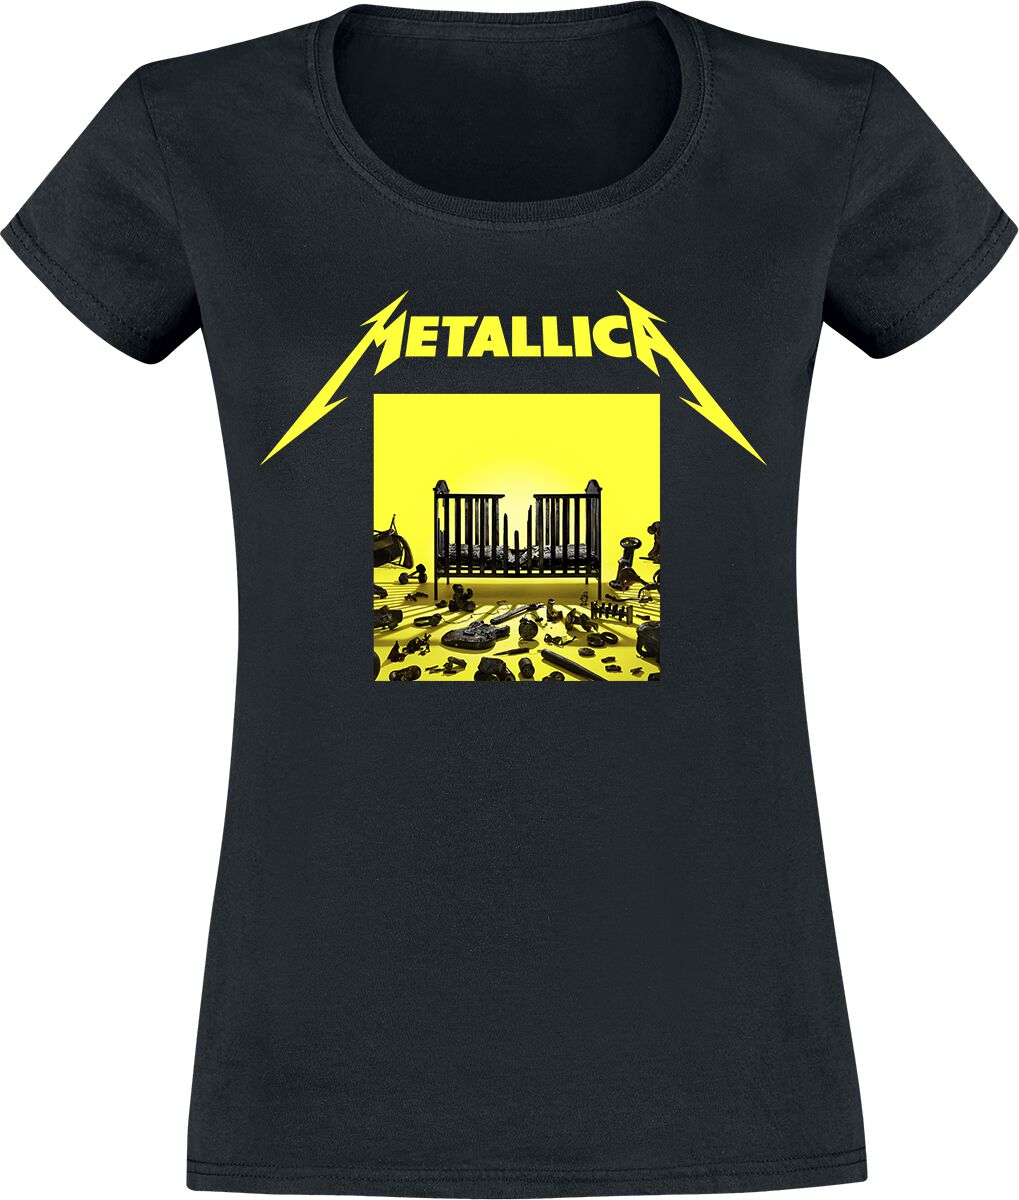 T-Shirt Manches courtes de Metallica - M72 Squared Cover - S à XXL - pour Femme - noir